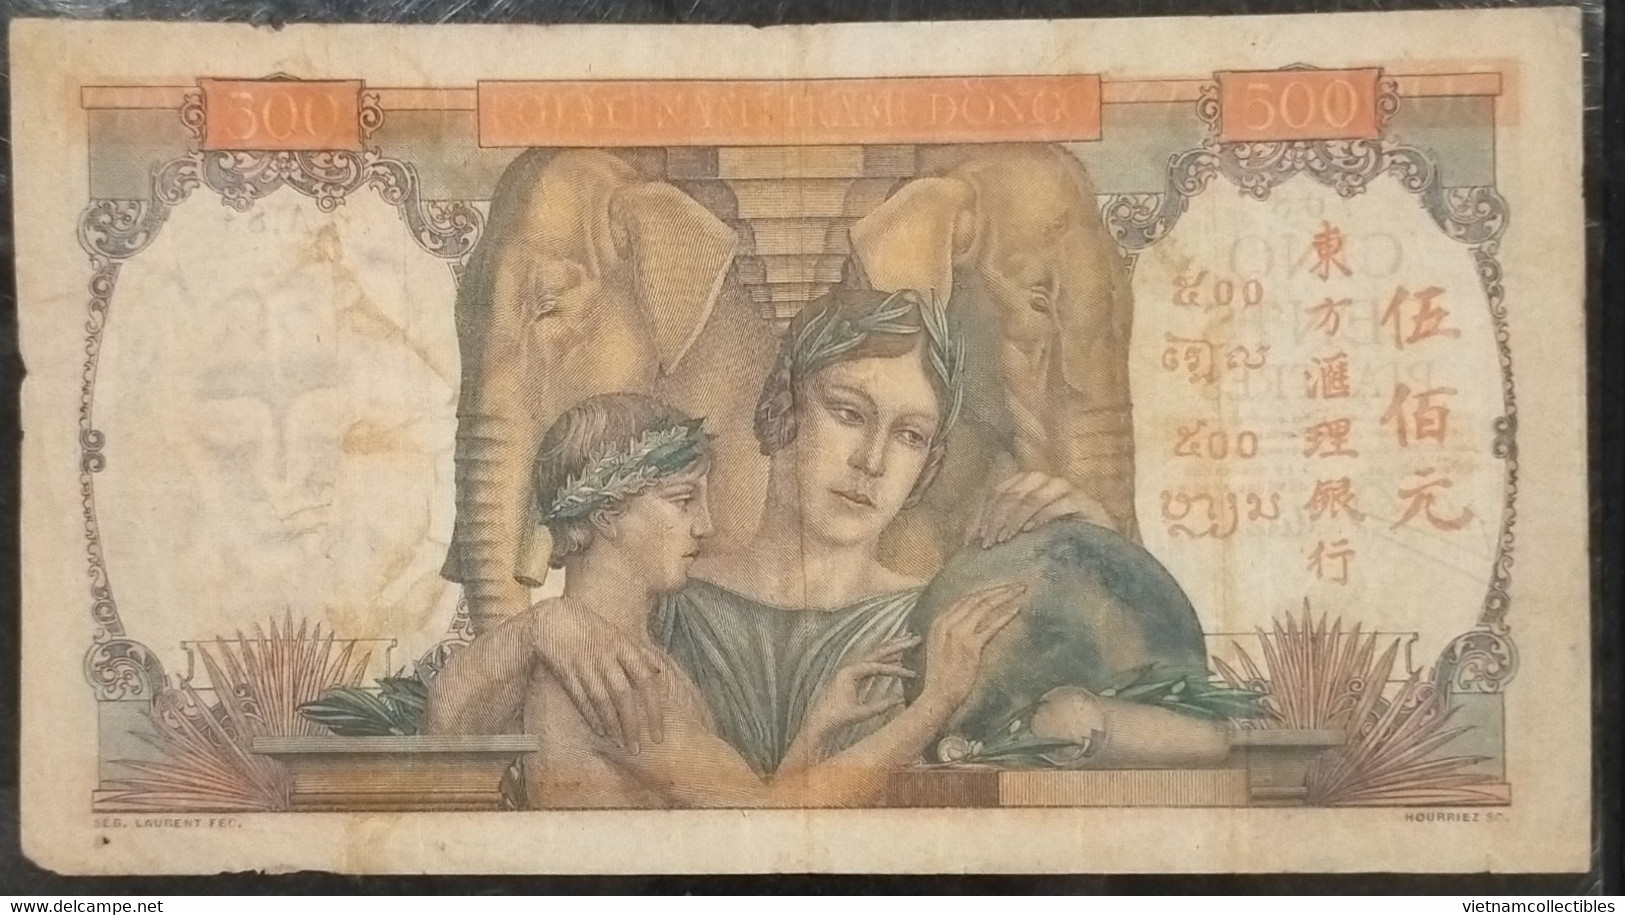 Indochina Indochine Vietnam Viet Nam Laos Cambodia 500 Piastres VF Banknote Note / Billet 1951 - Pick# 83 / 02 Photos - Indochine